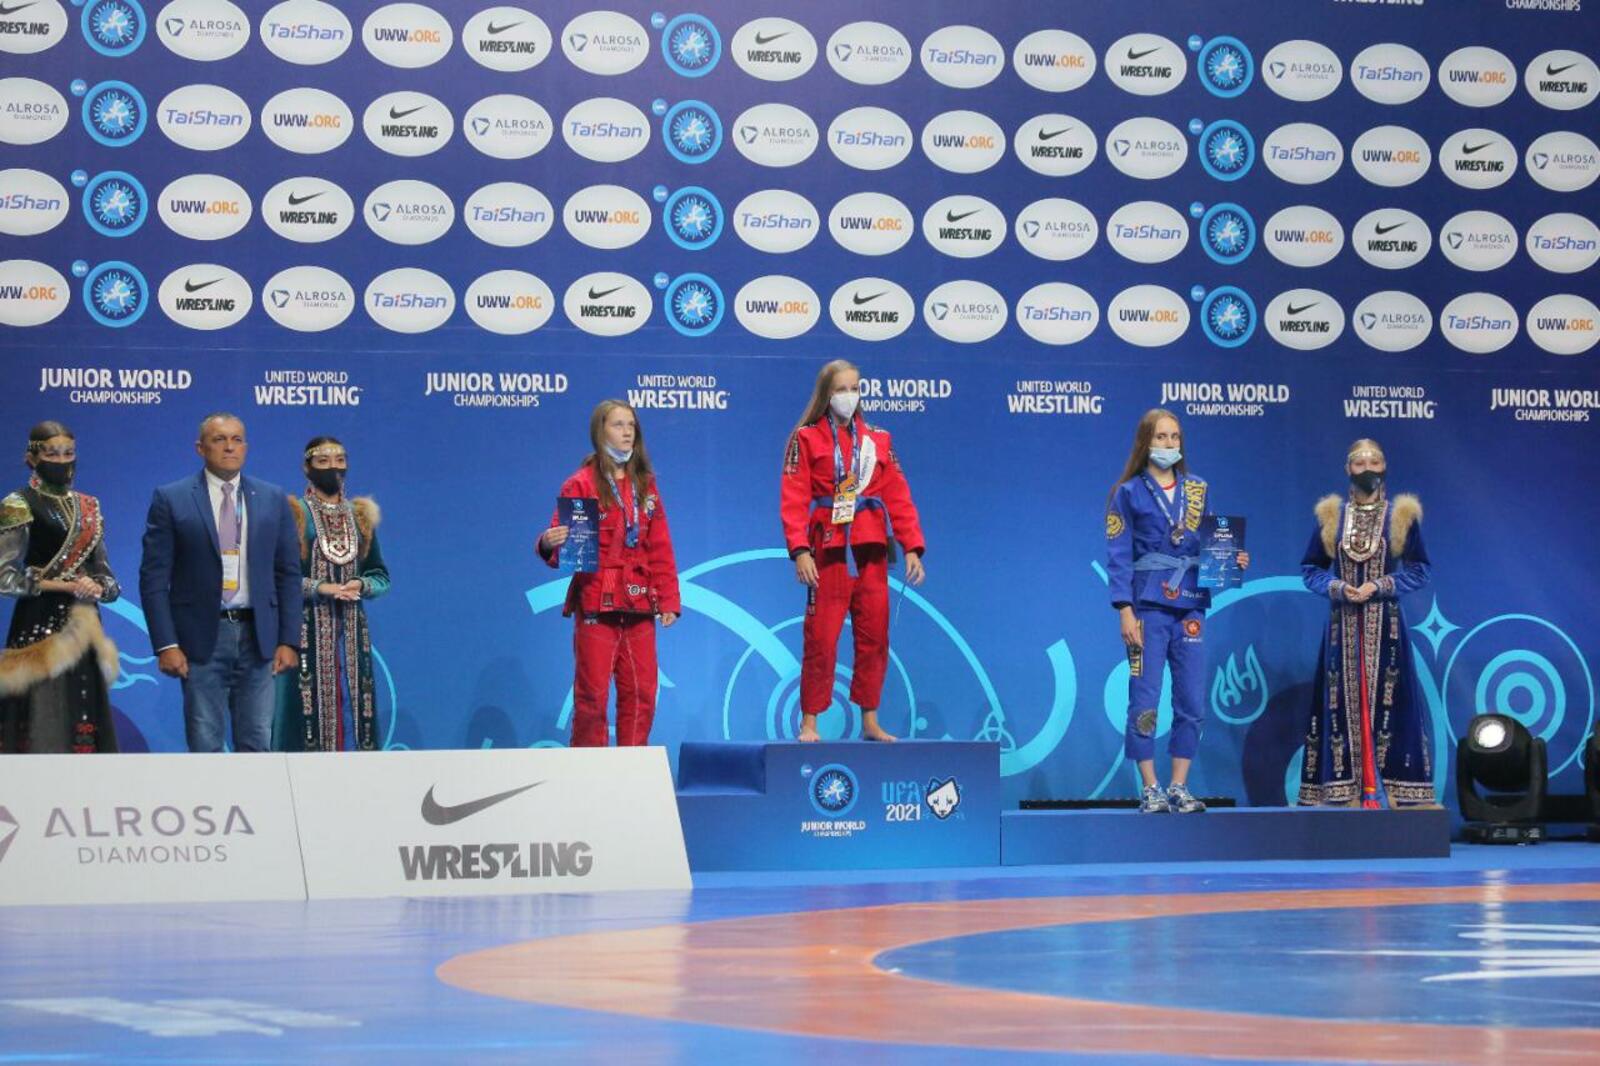 Башкирские спортсменки завоевали четыре золотые медали на чемпионате мира по спортивной борьбе среди юниоров